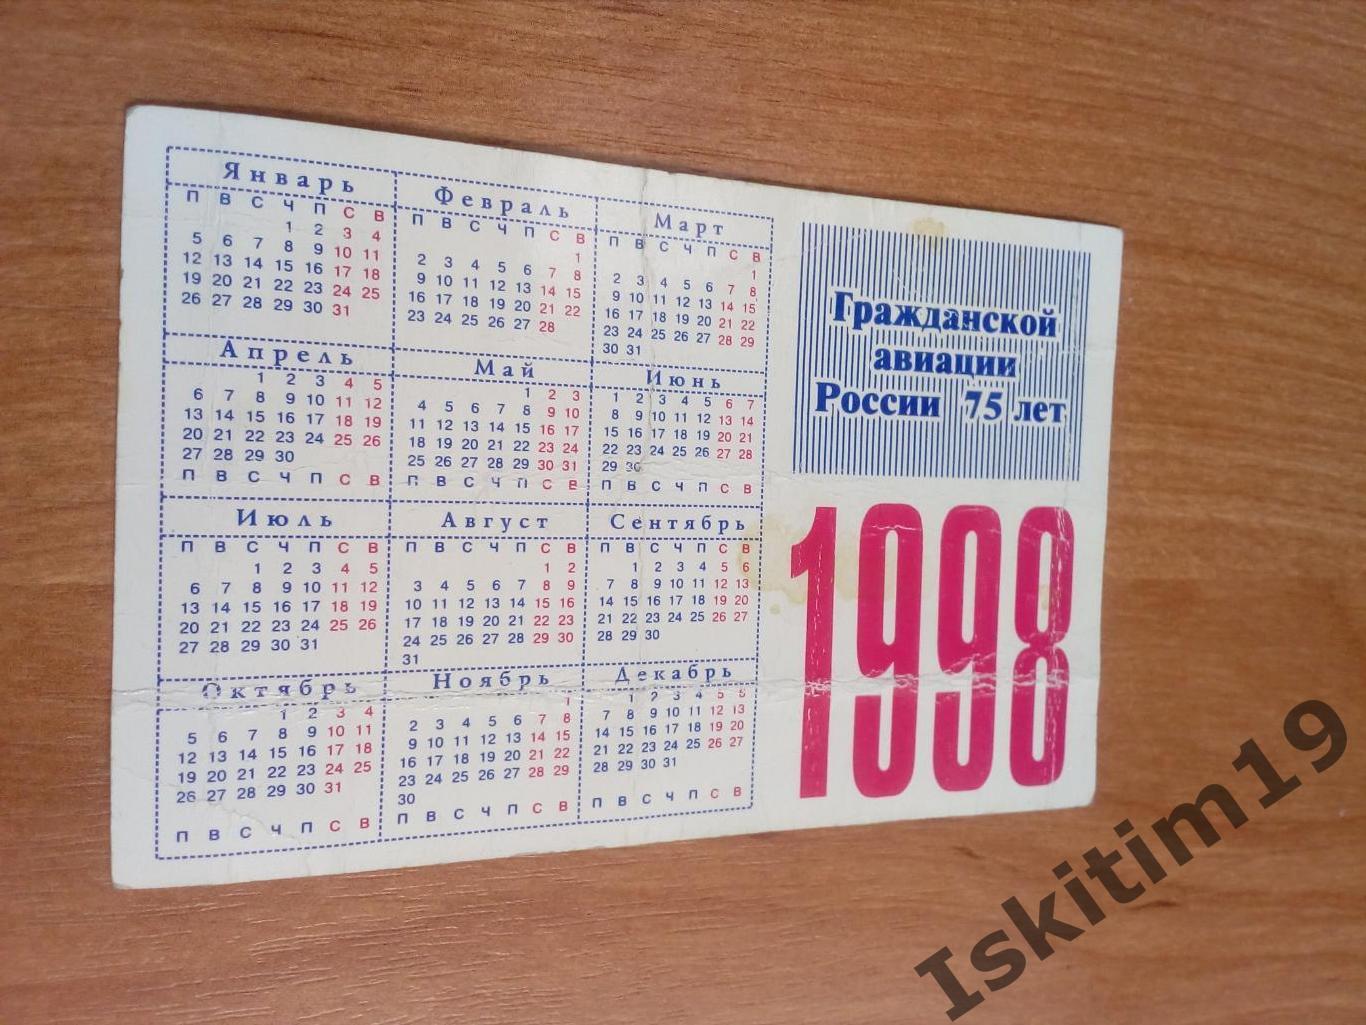 Календарик 1998. Гражданской авиации России 75 лет 1